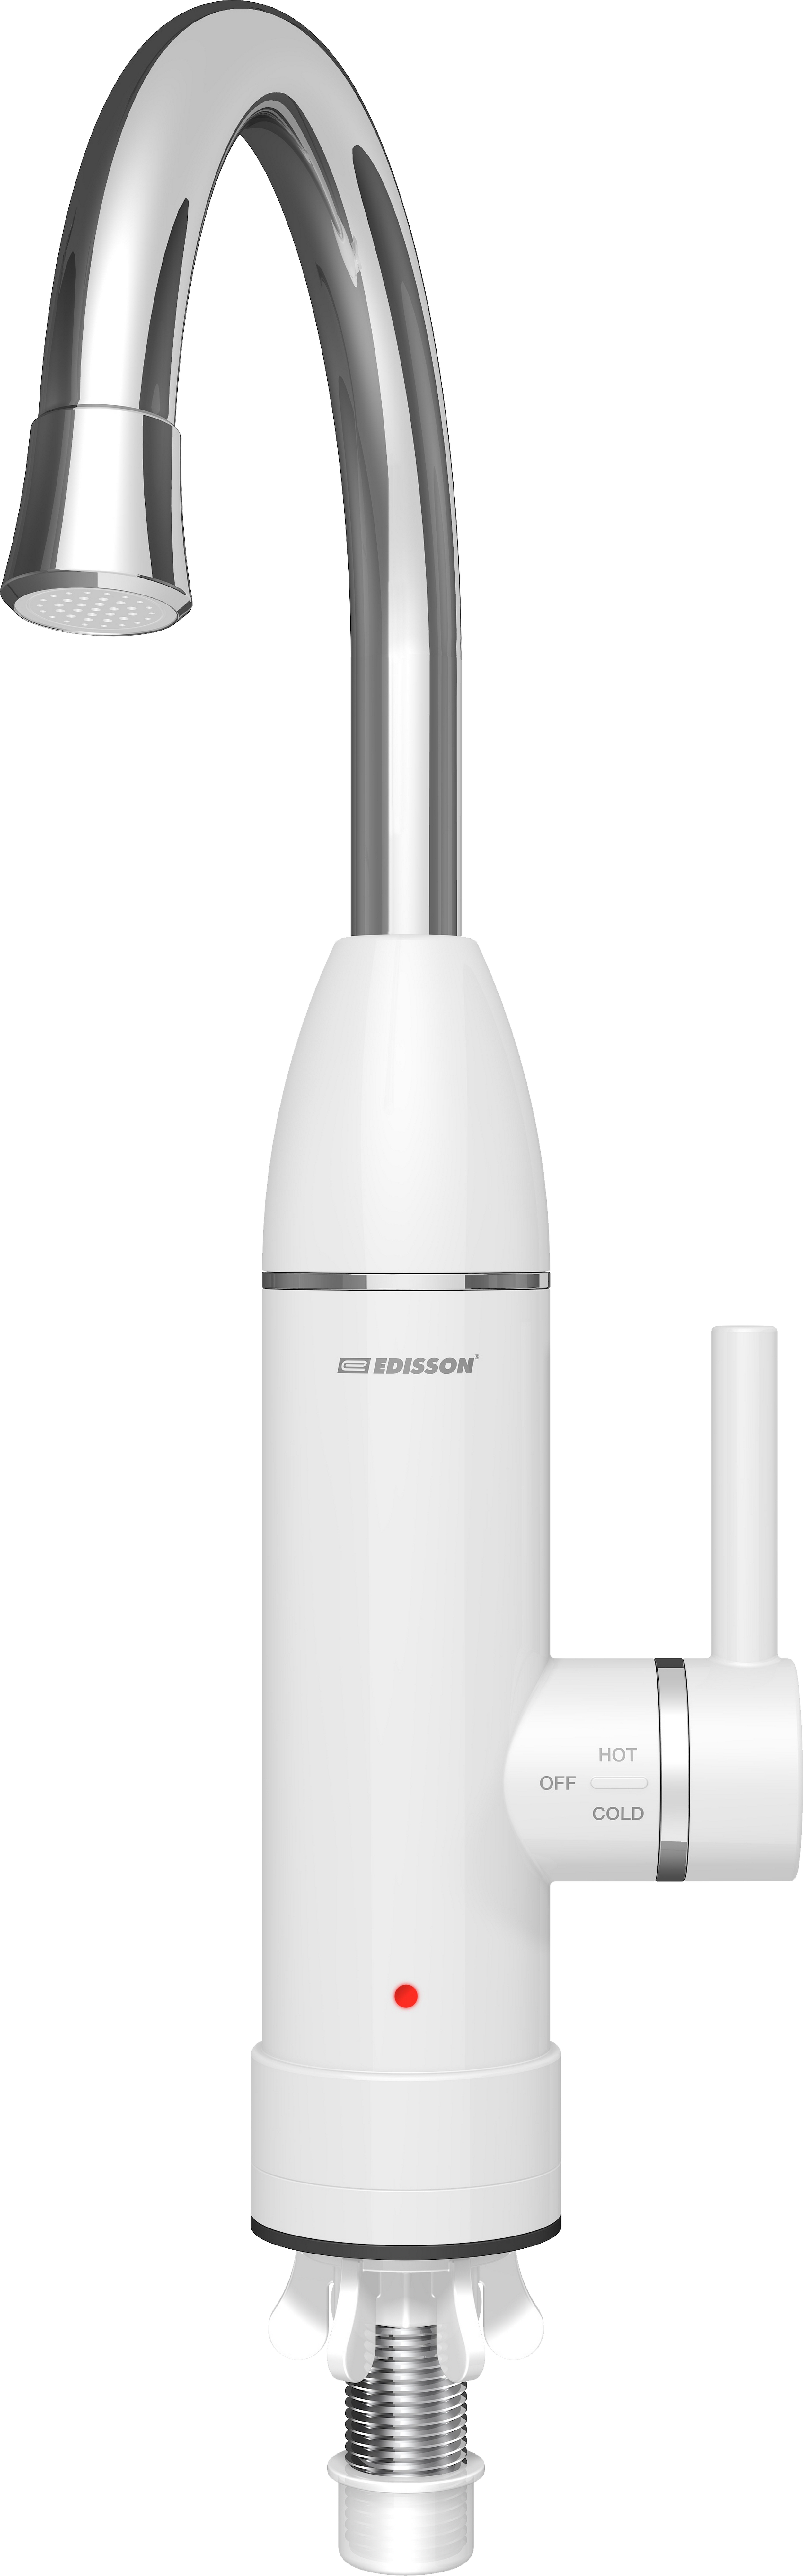 Проточный водонагреватель Edisson Mini 3000 в интернет-магазине, главное фото